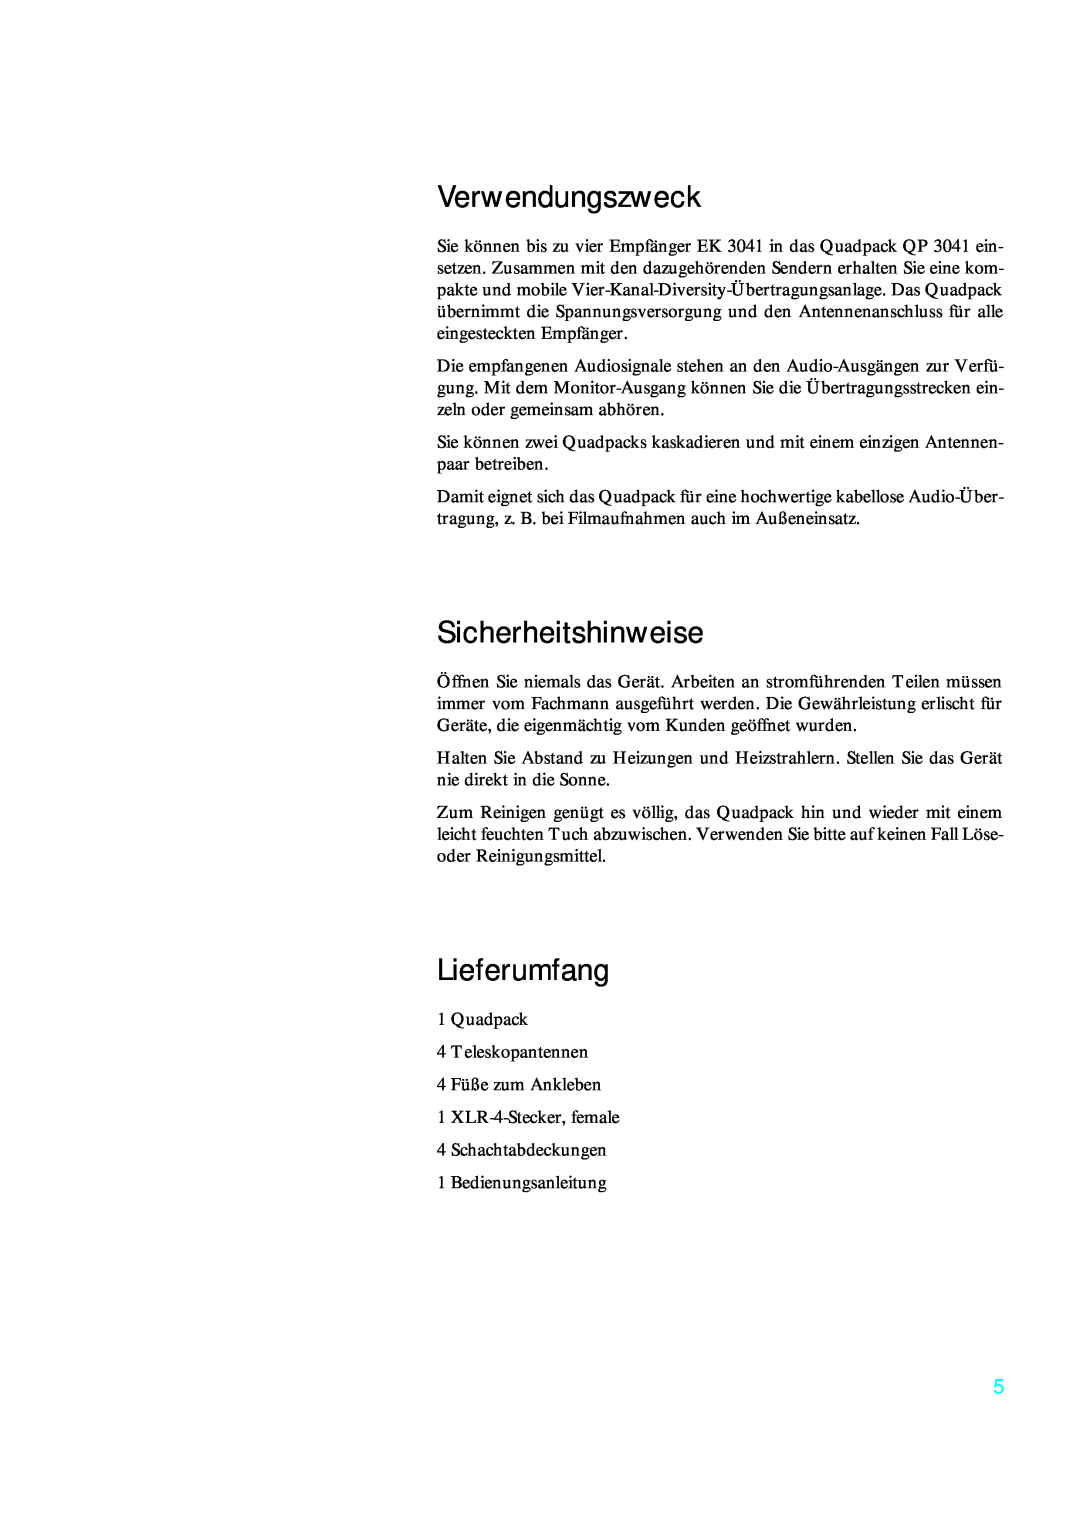 Sennheiser qp 3041 instruction manual Verwendungszweck, Sicherheitshinweise, Lieferumfang 